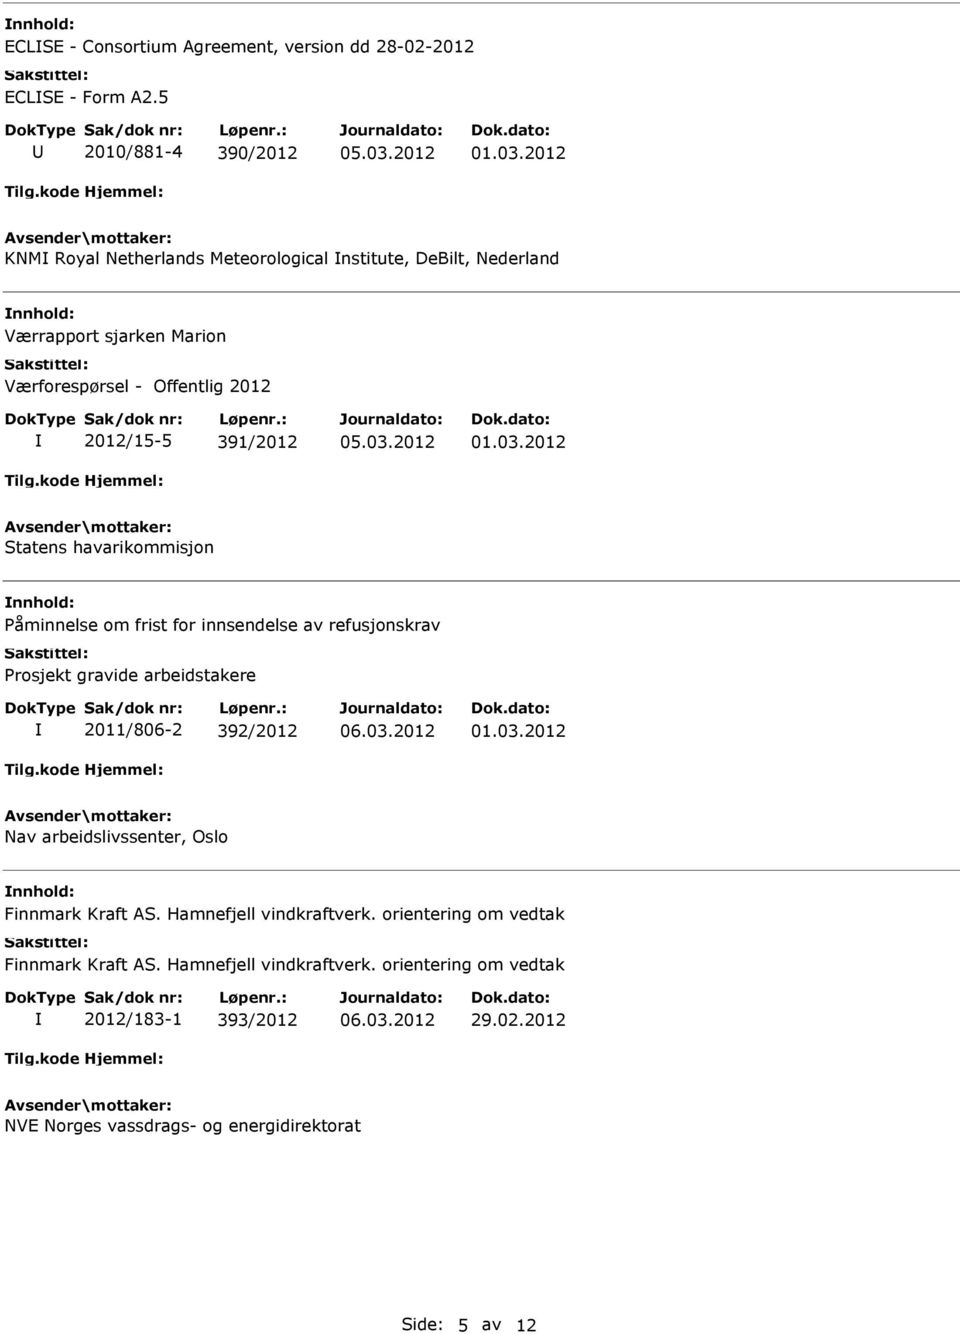 2012 Statens havarikommisjon åminnelse om frist for innsendelse av refusjonskrav rosjekt gravide arbeidstakere 2011/806-2 392/2012 01.03.